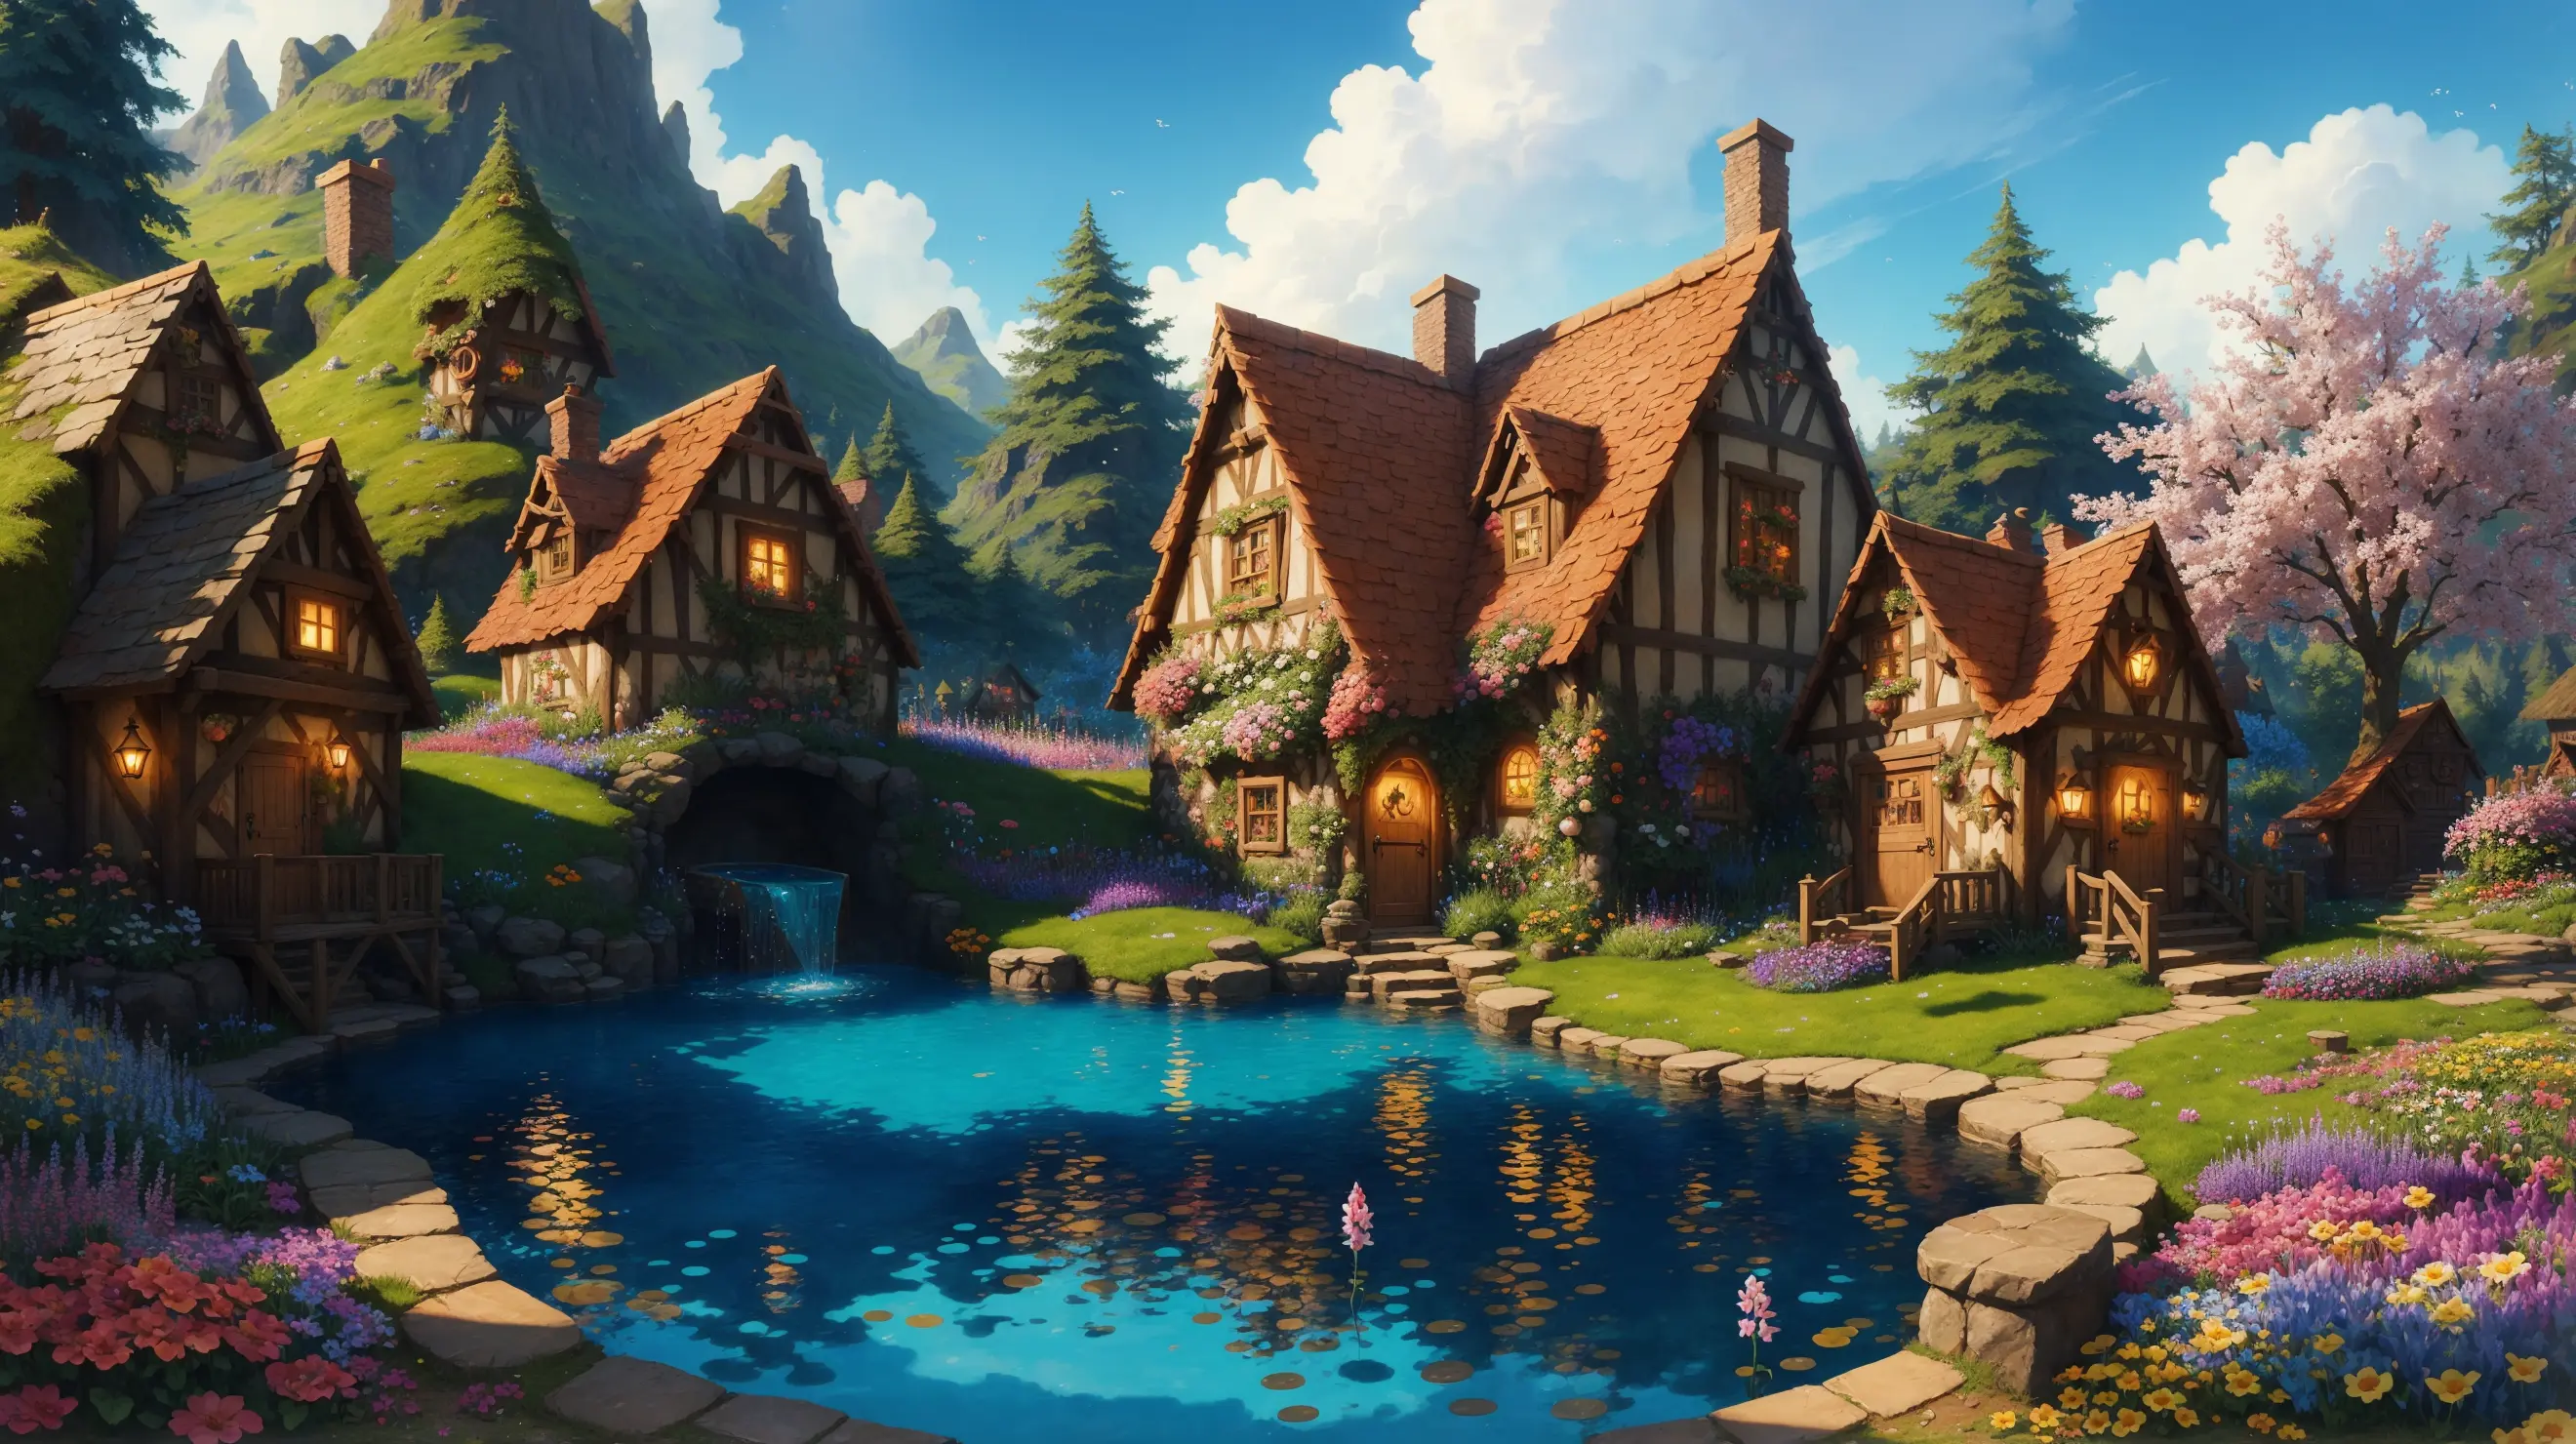 Märchendorf mit Pool in der Mitte, bunt Blumen, Meisterwerk, beste Qualität, Ton, einfaches Design, Pixar-Stil, übersättigt, hyperrealistisch, artgerm, 